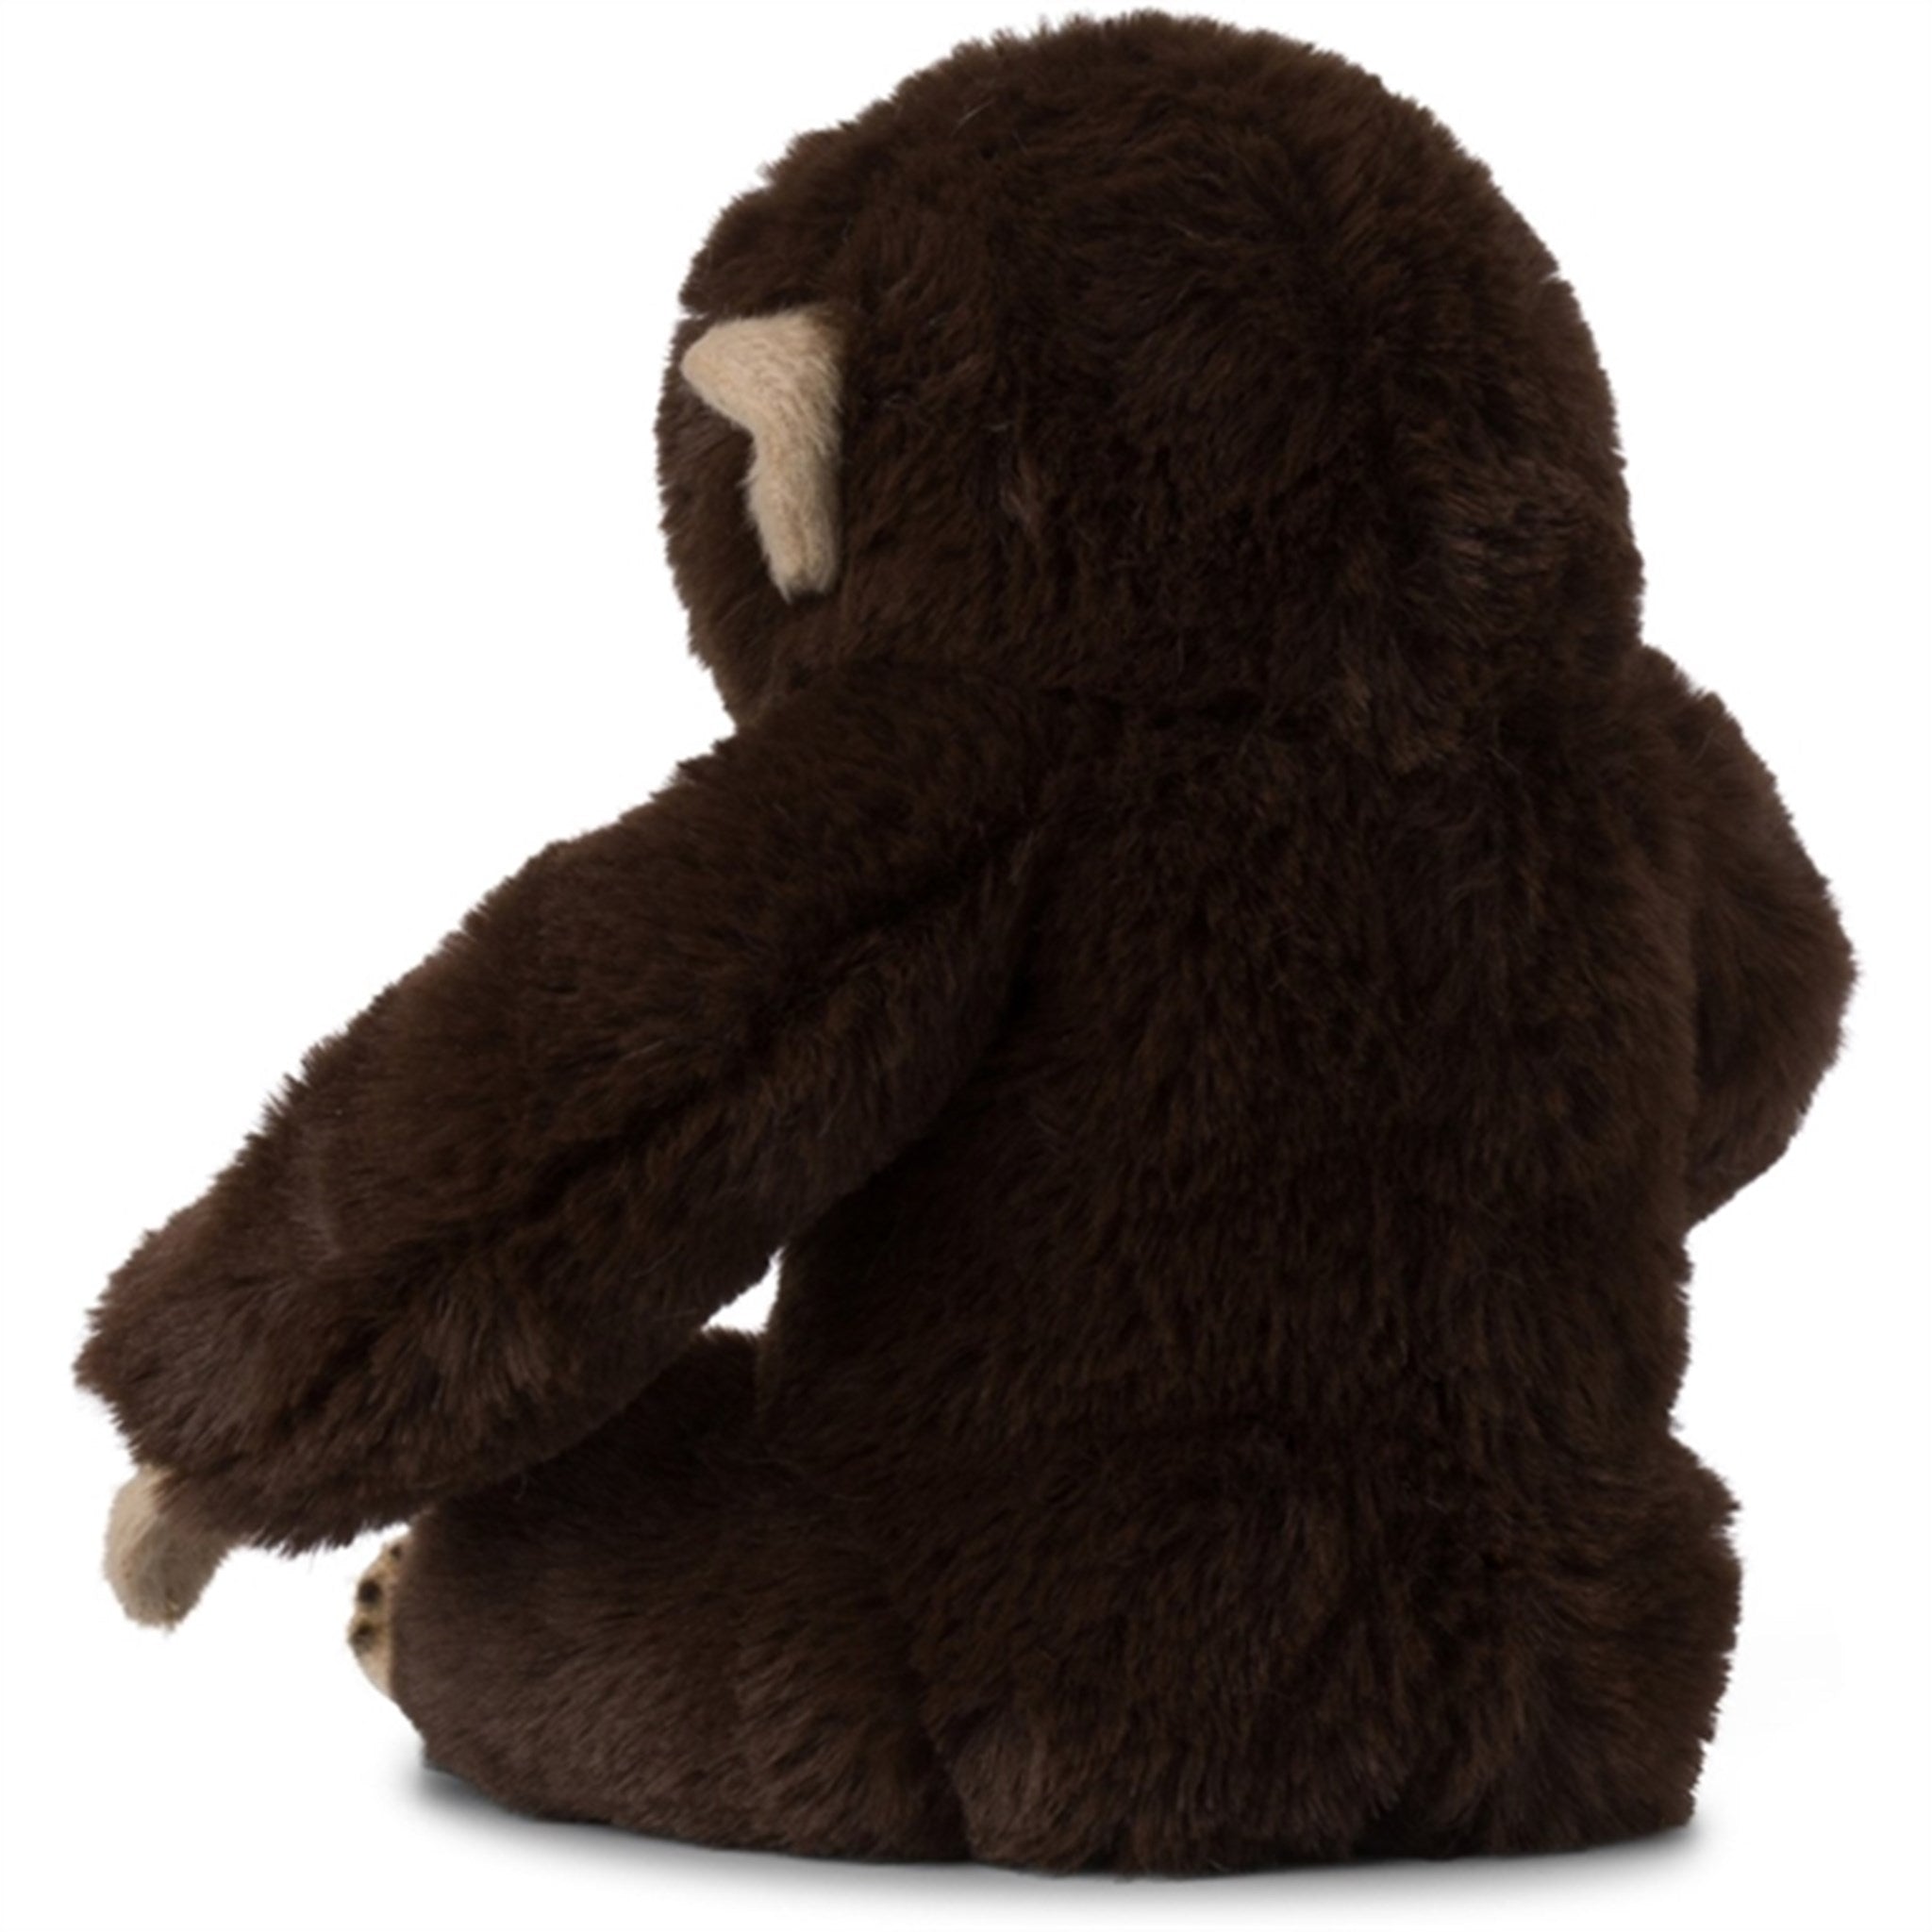 Bon Ton Toys WWF Plush Chimpanzee 23 cm 5